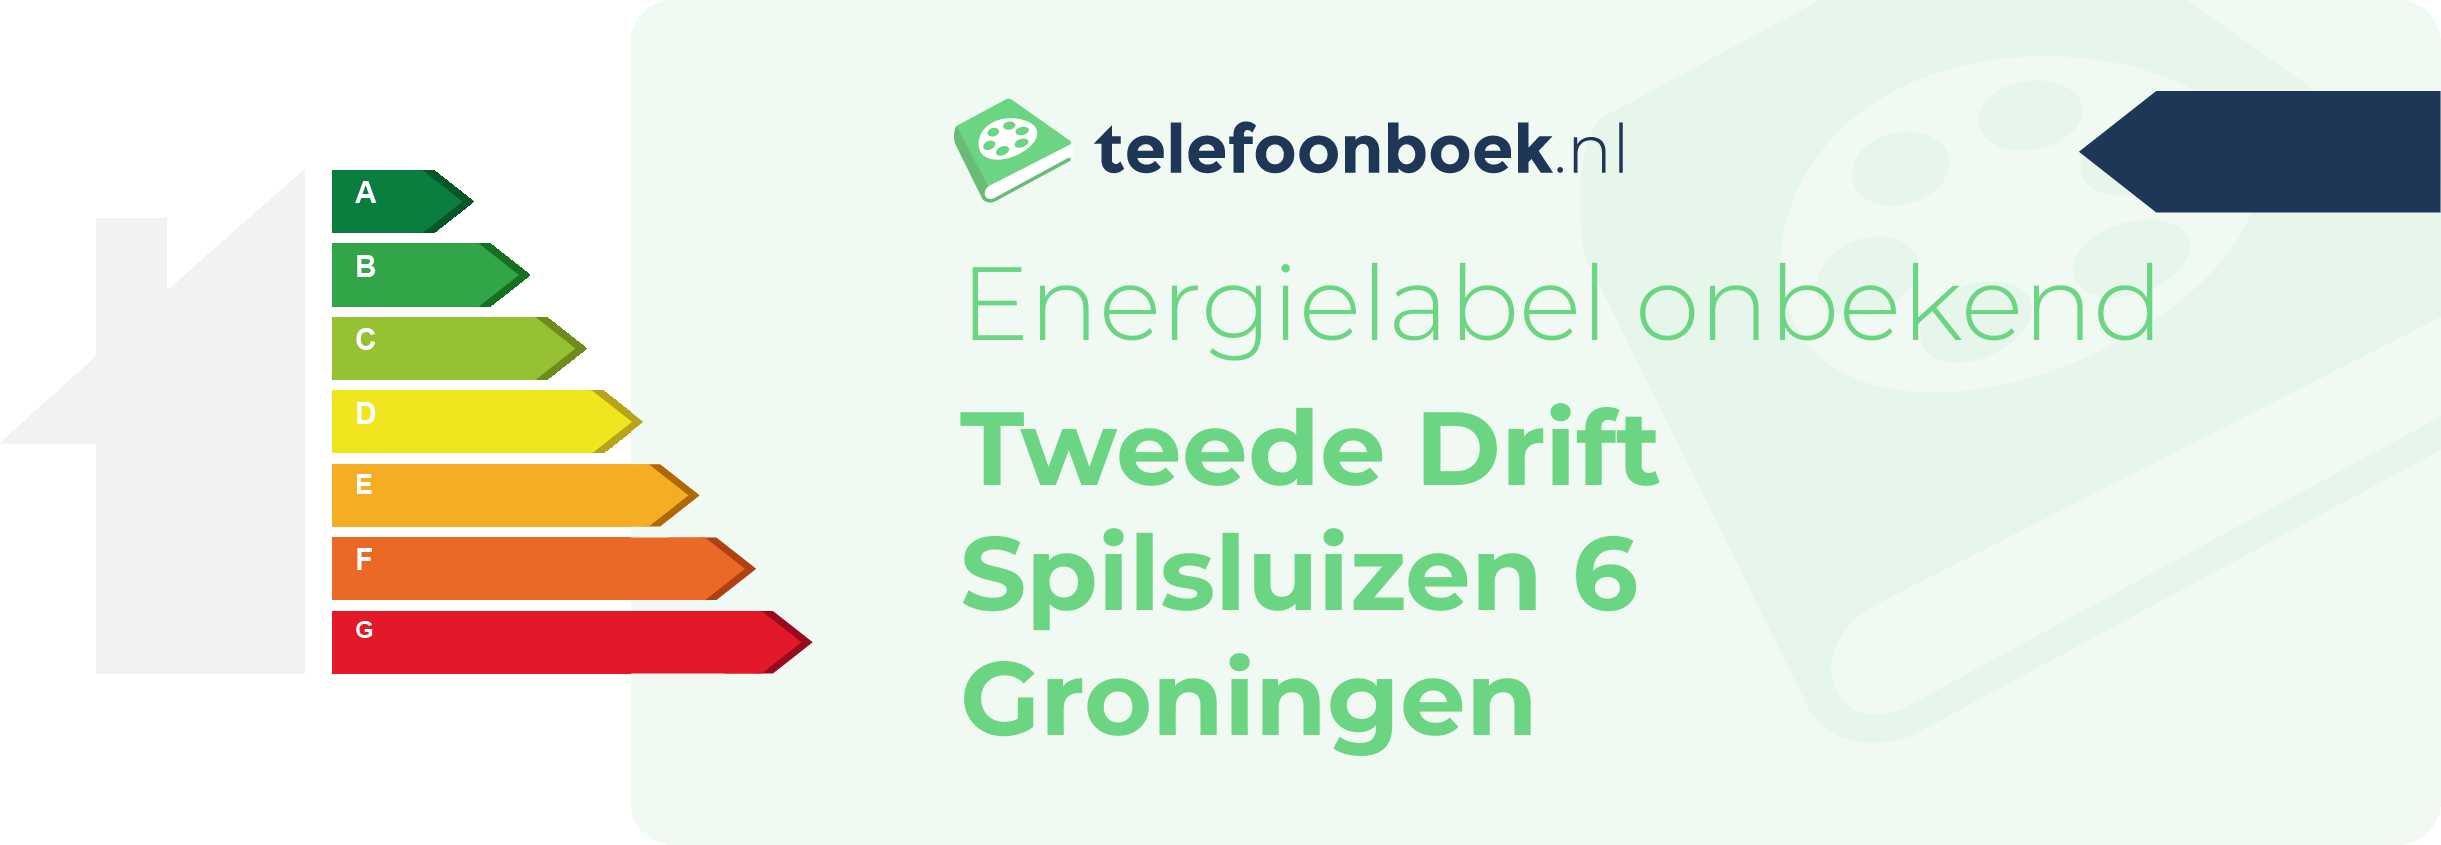 Energielabel Tweede Drift Spilsluizen 6 Groningen